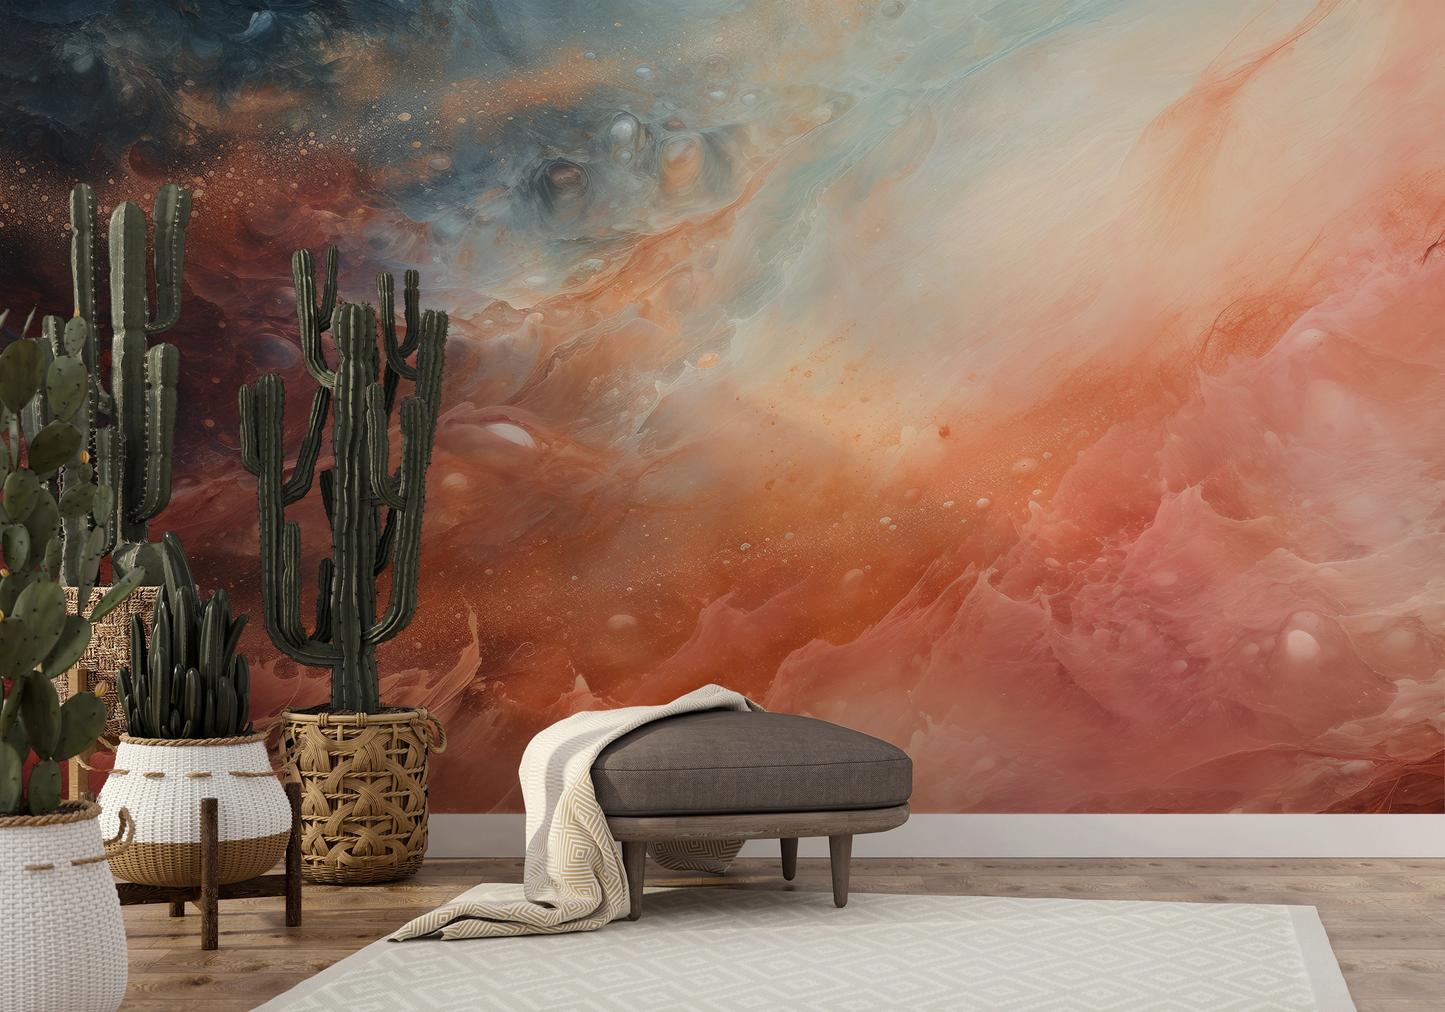 Wzór fototapety malowanej o nazwie Solar Nebula pokazanej w aranżacji wnętrza.